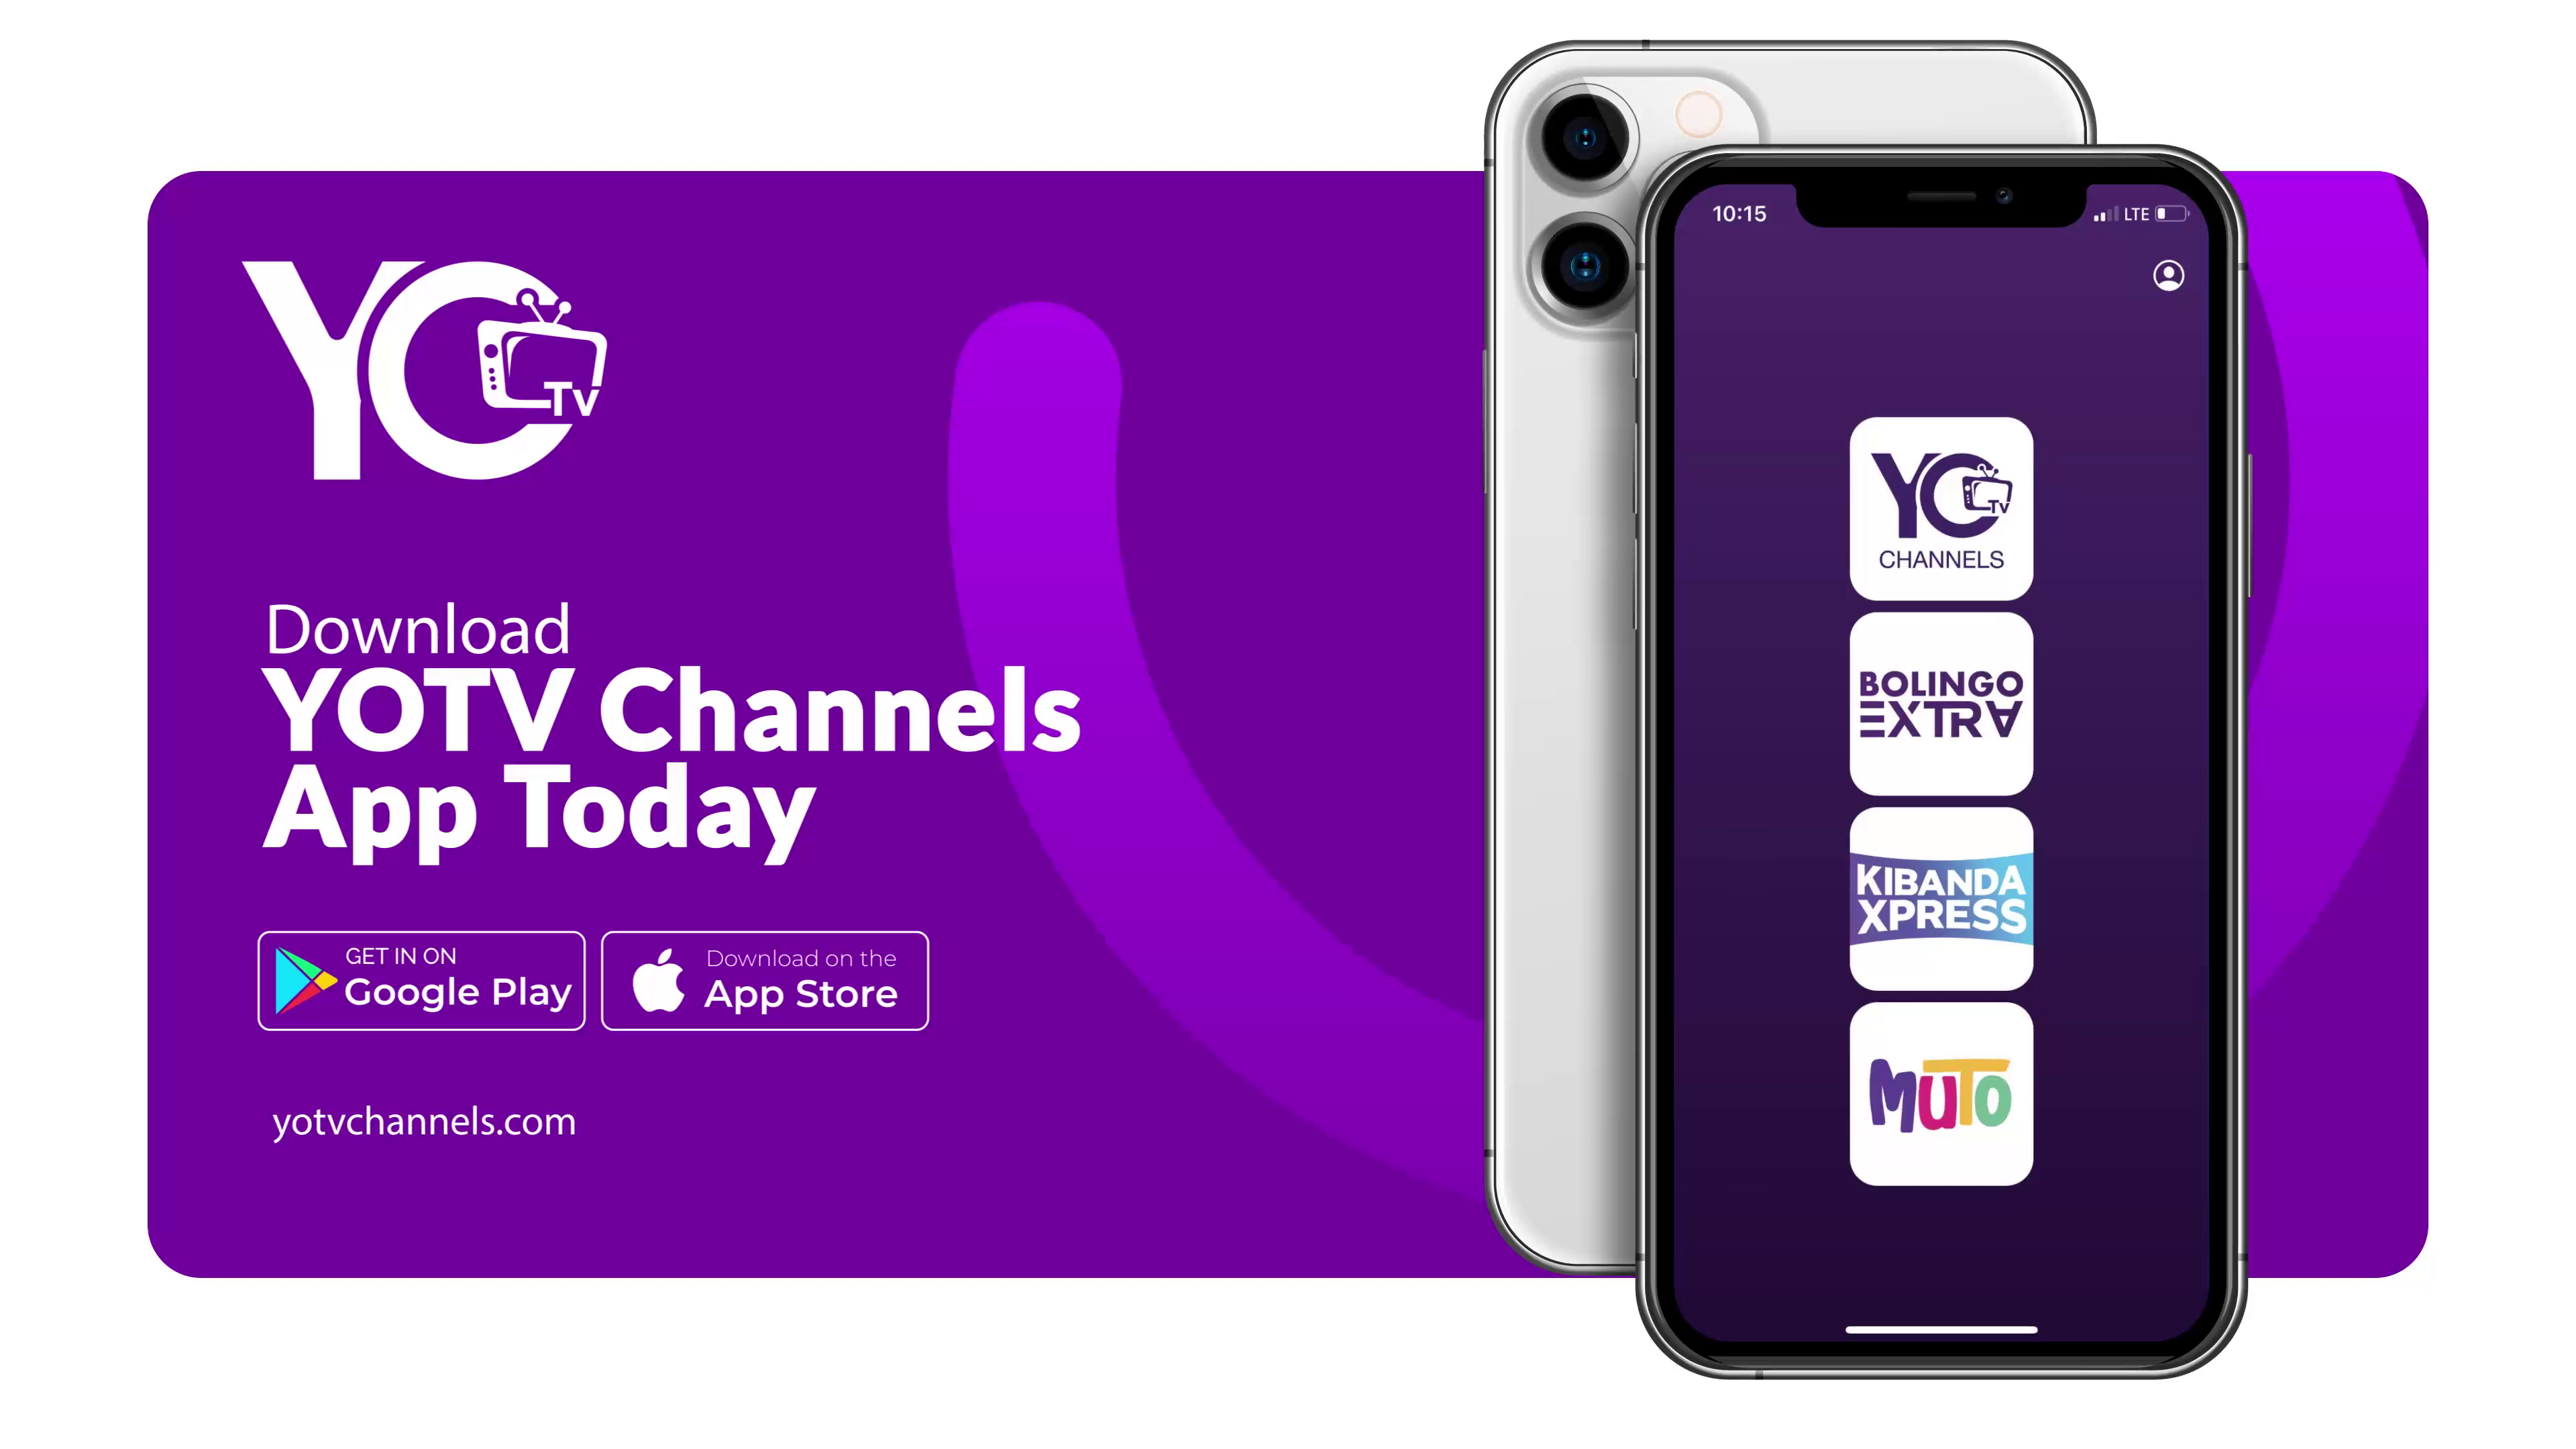 YOTV Channels App Presentation by Keem Tron on Dribbble